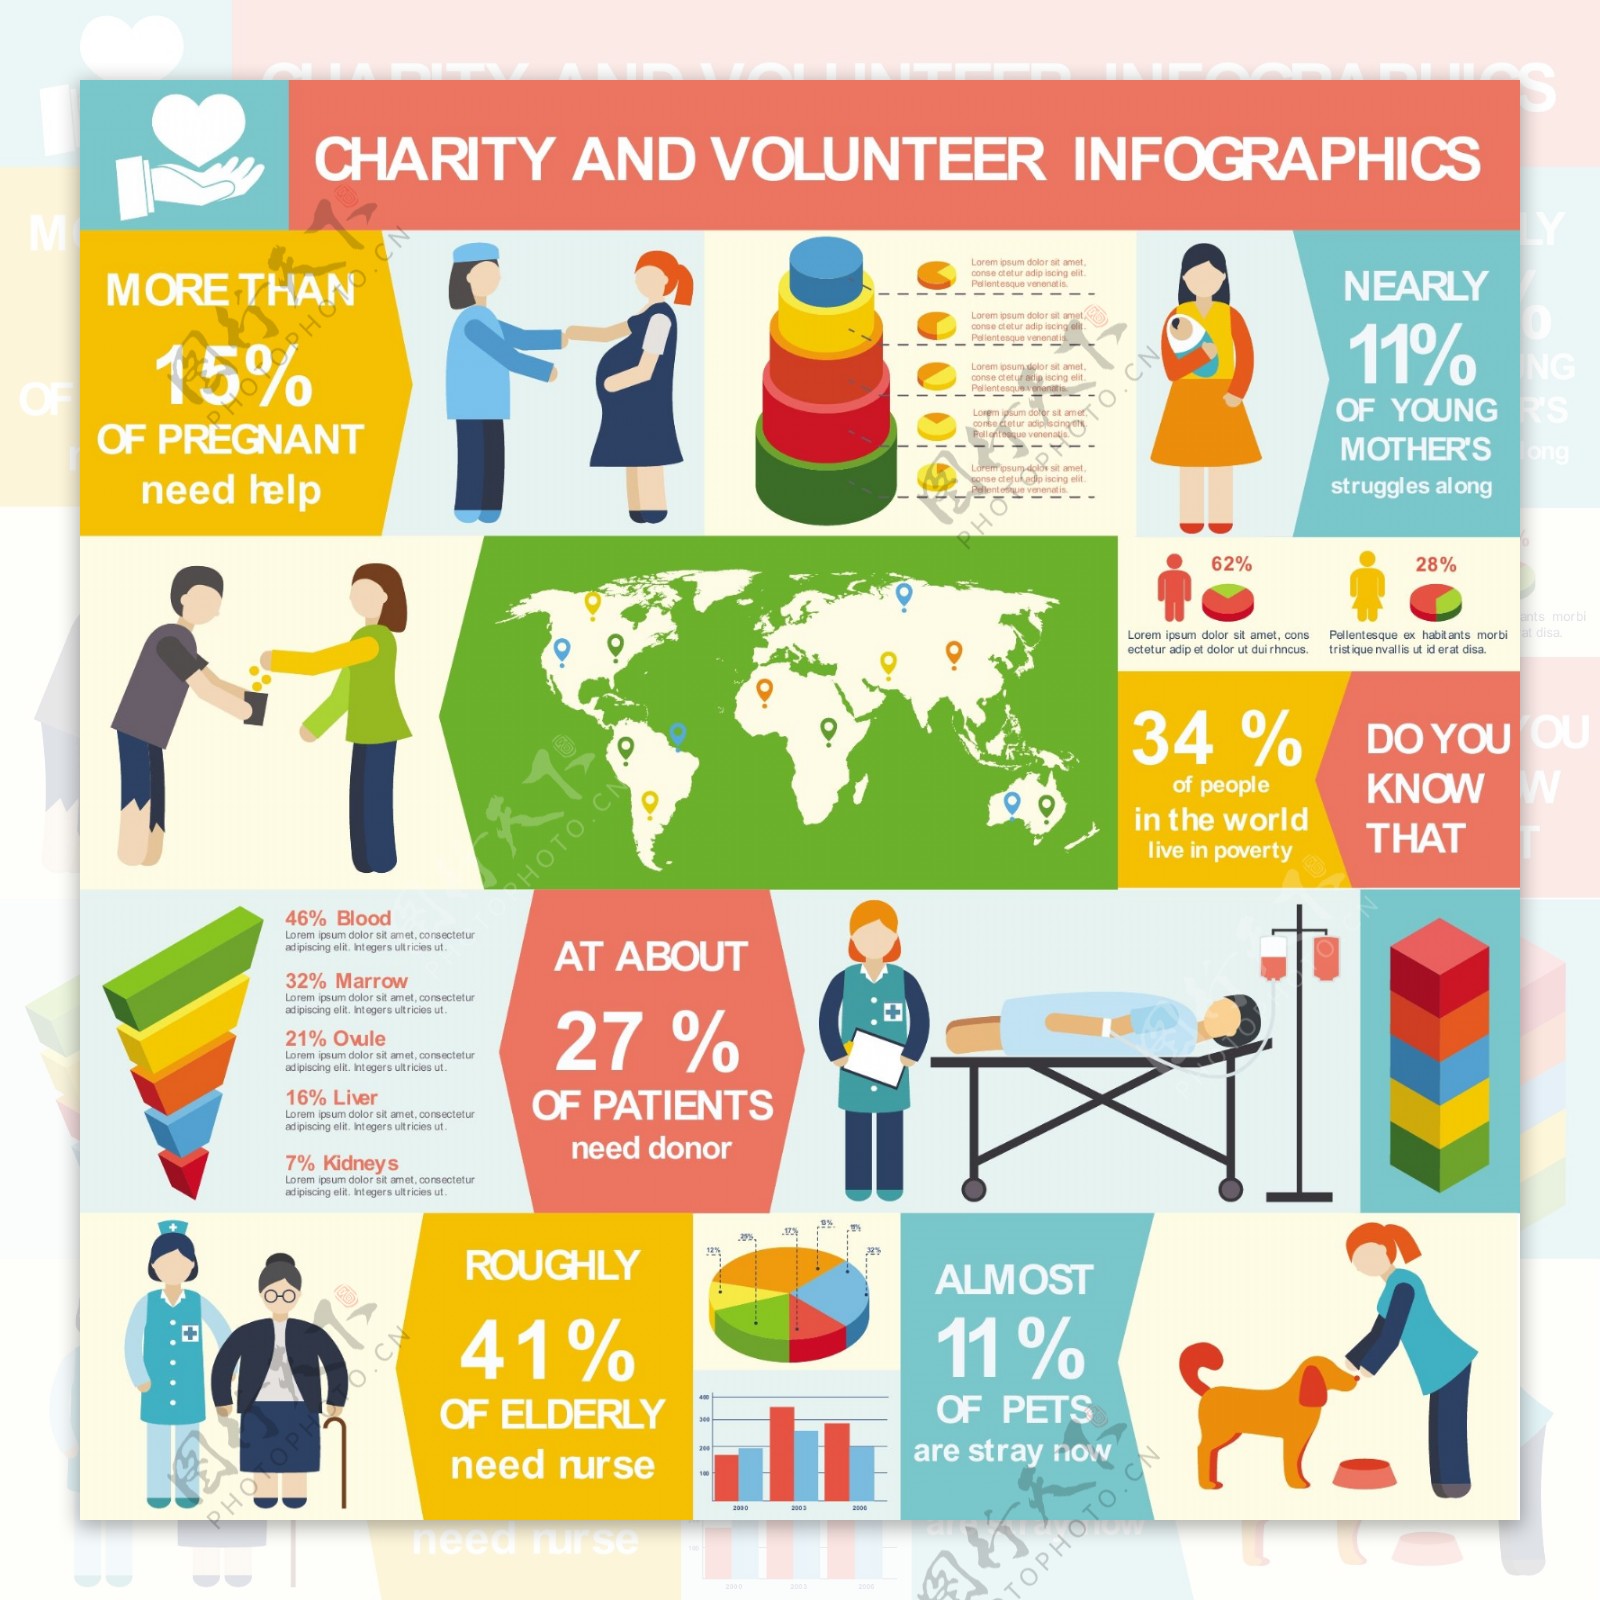 图表关于慈善和志愿服务